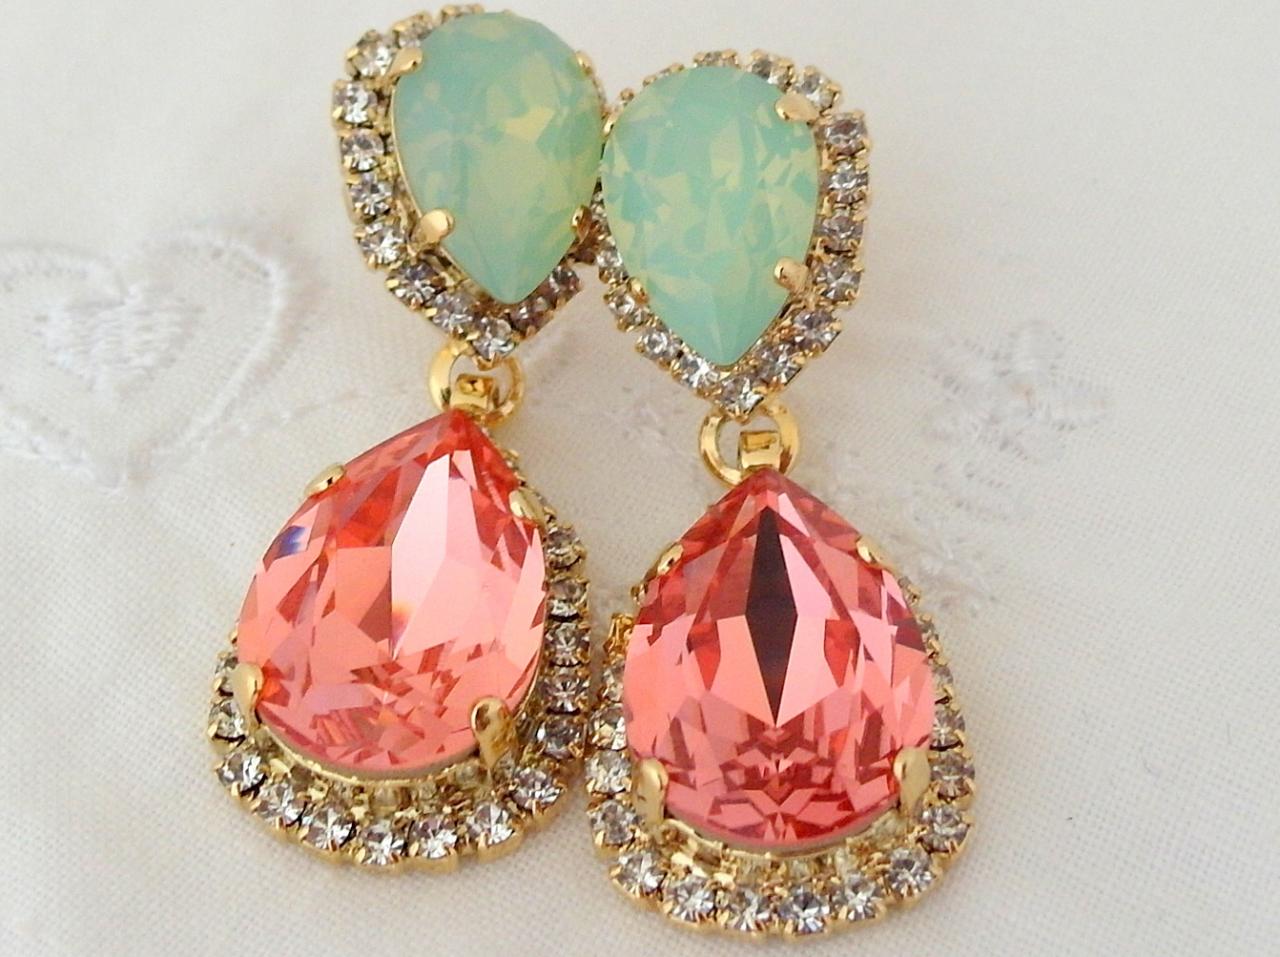 Peach Coral Mint Chandelier Earrings, Bridal Earrings, Drop Earrings, Dangle Earrings, Weddings Jewelry, Estate Style Swarovski Earrings